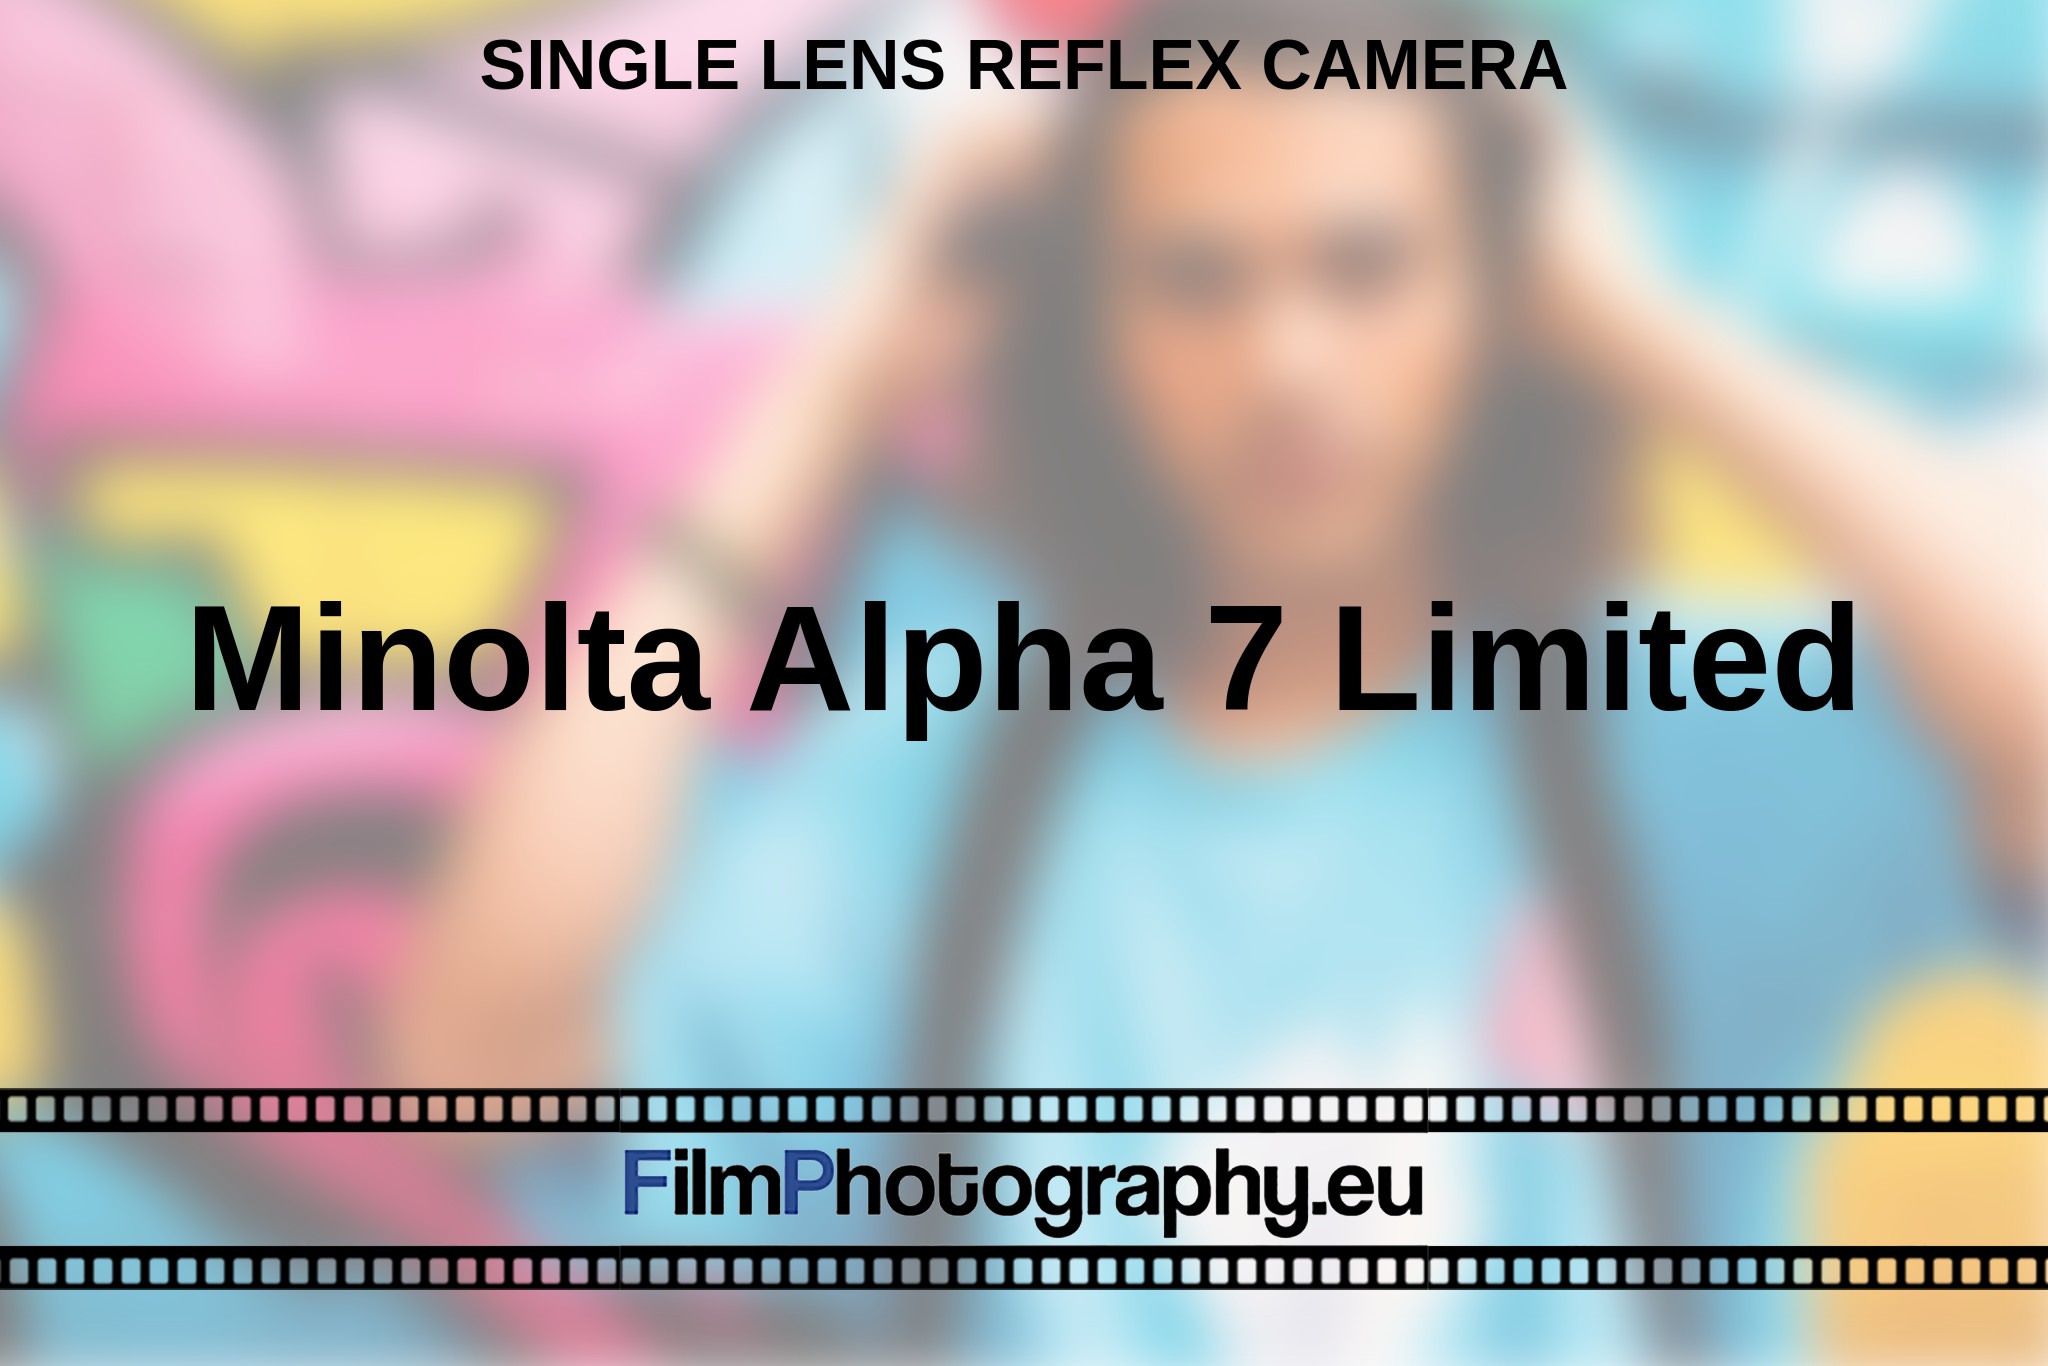 minolta-alpha-7-limited-single-lens-reflex-camera-en-bnv.jpg